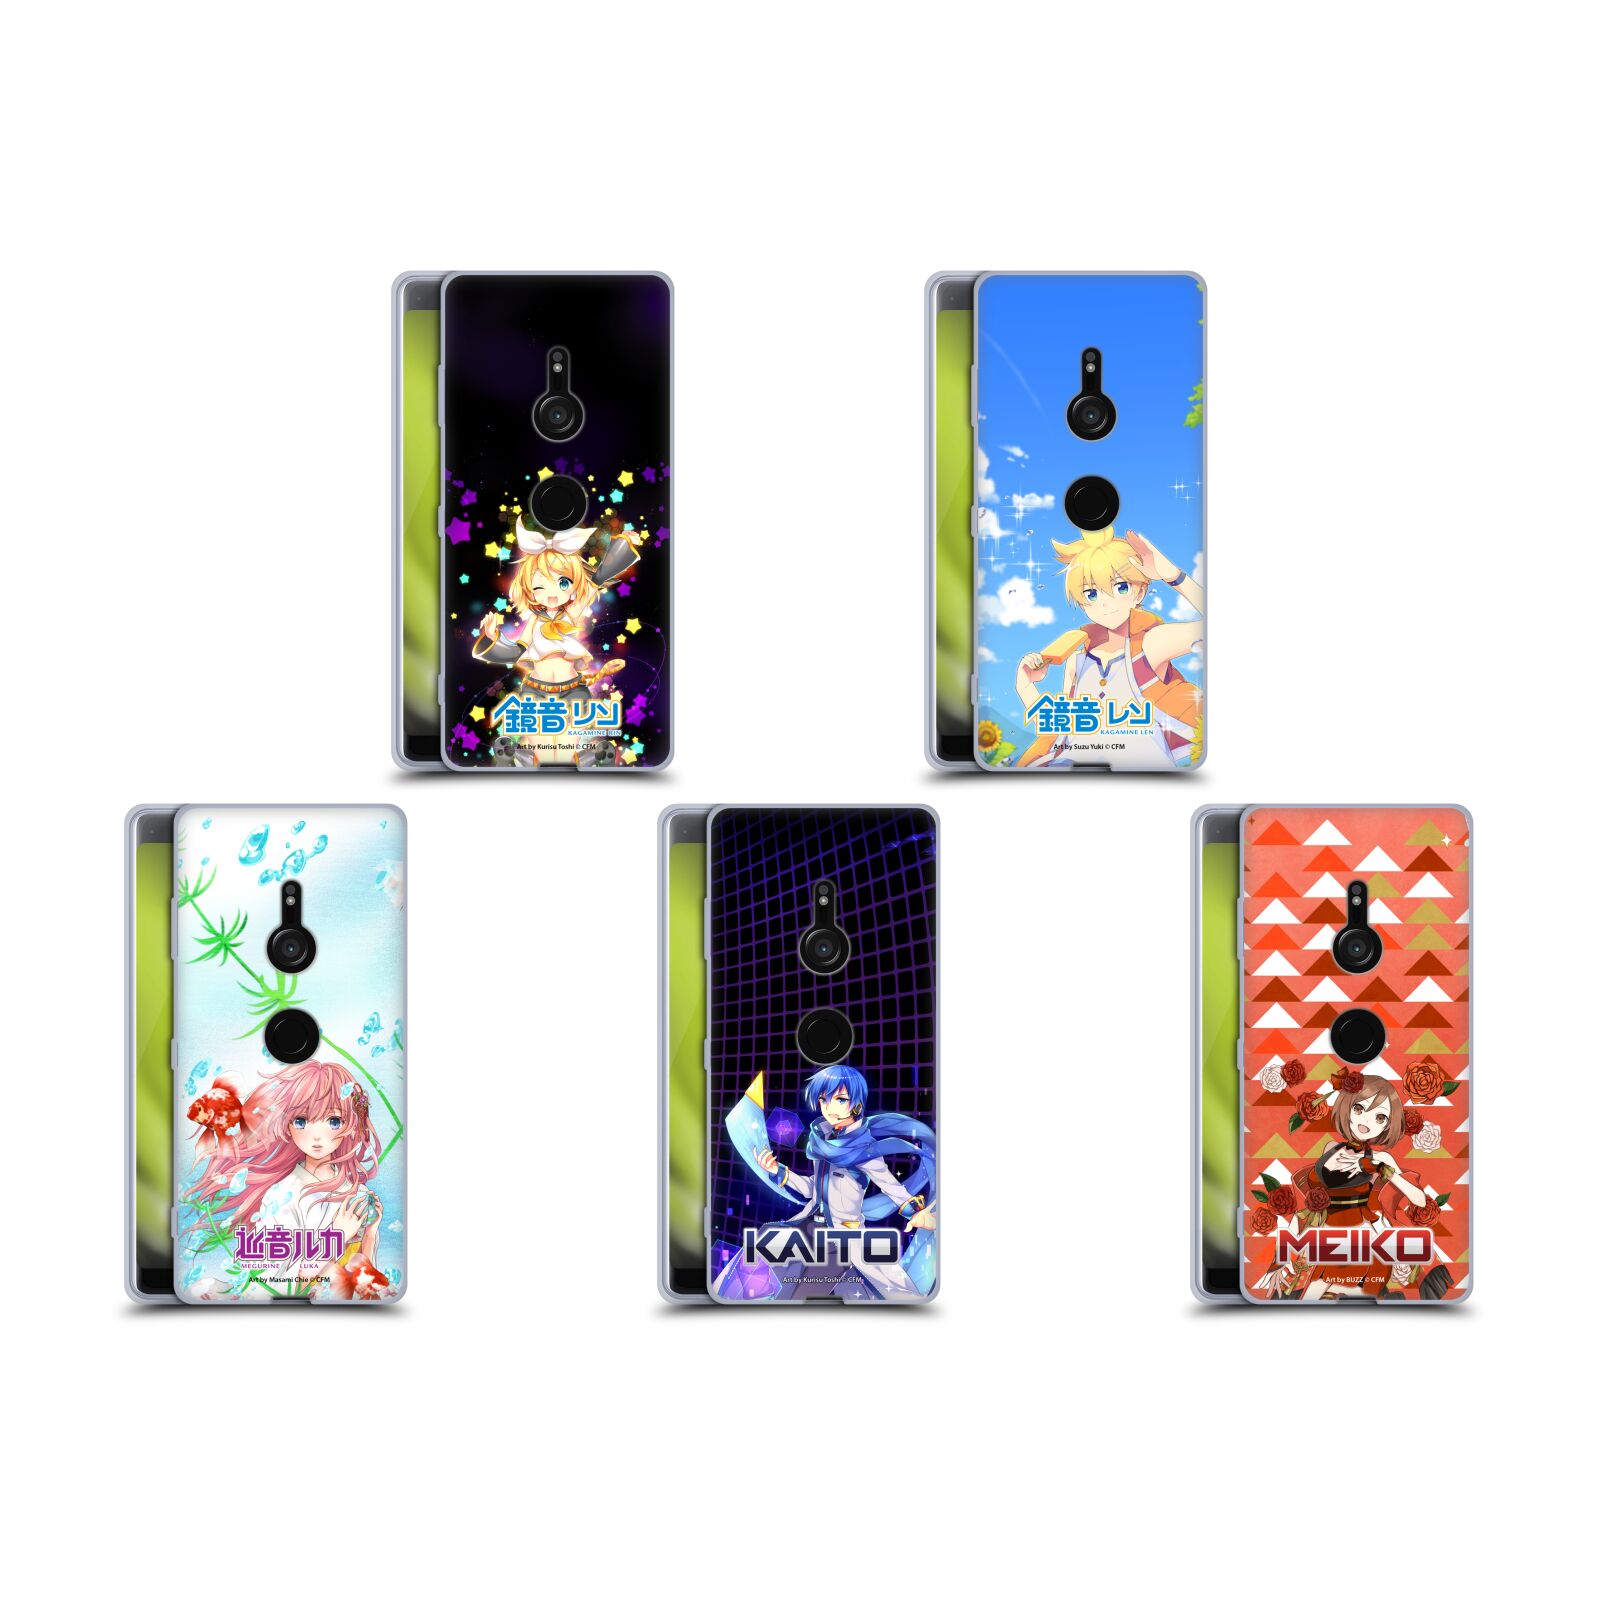 公式ライセンス Hatsune Miku キャラクター ソフトジェルケース Sony 電話 1 初音ミク 鏡音リン 鏡音レン 巡音ルカ ボカロ スマホケース 全機種対応 グッズ ワイヤレス充電 対応 Qiワイヤレス充電